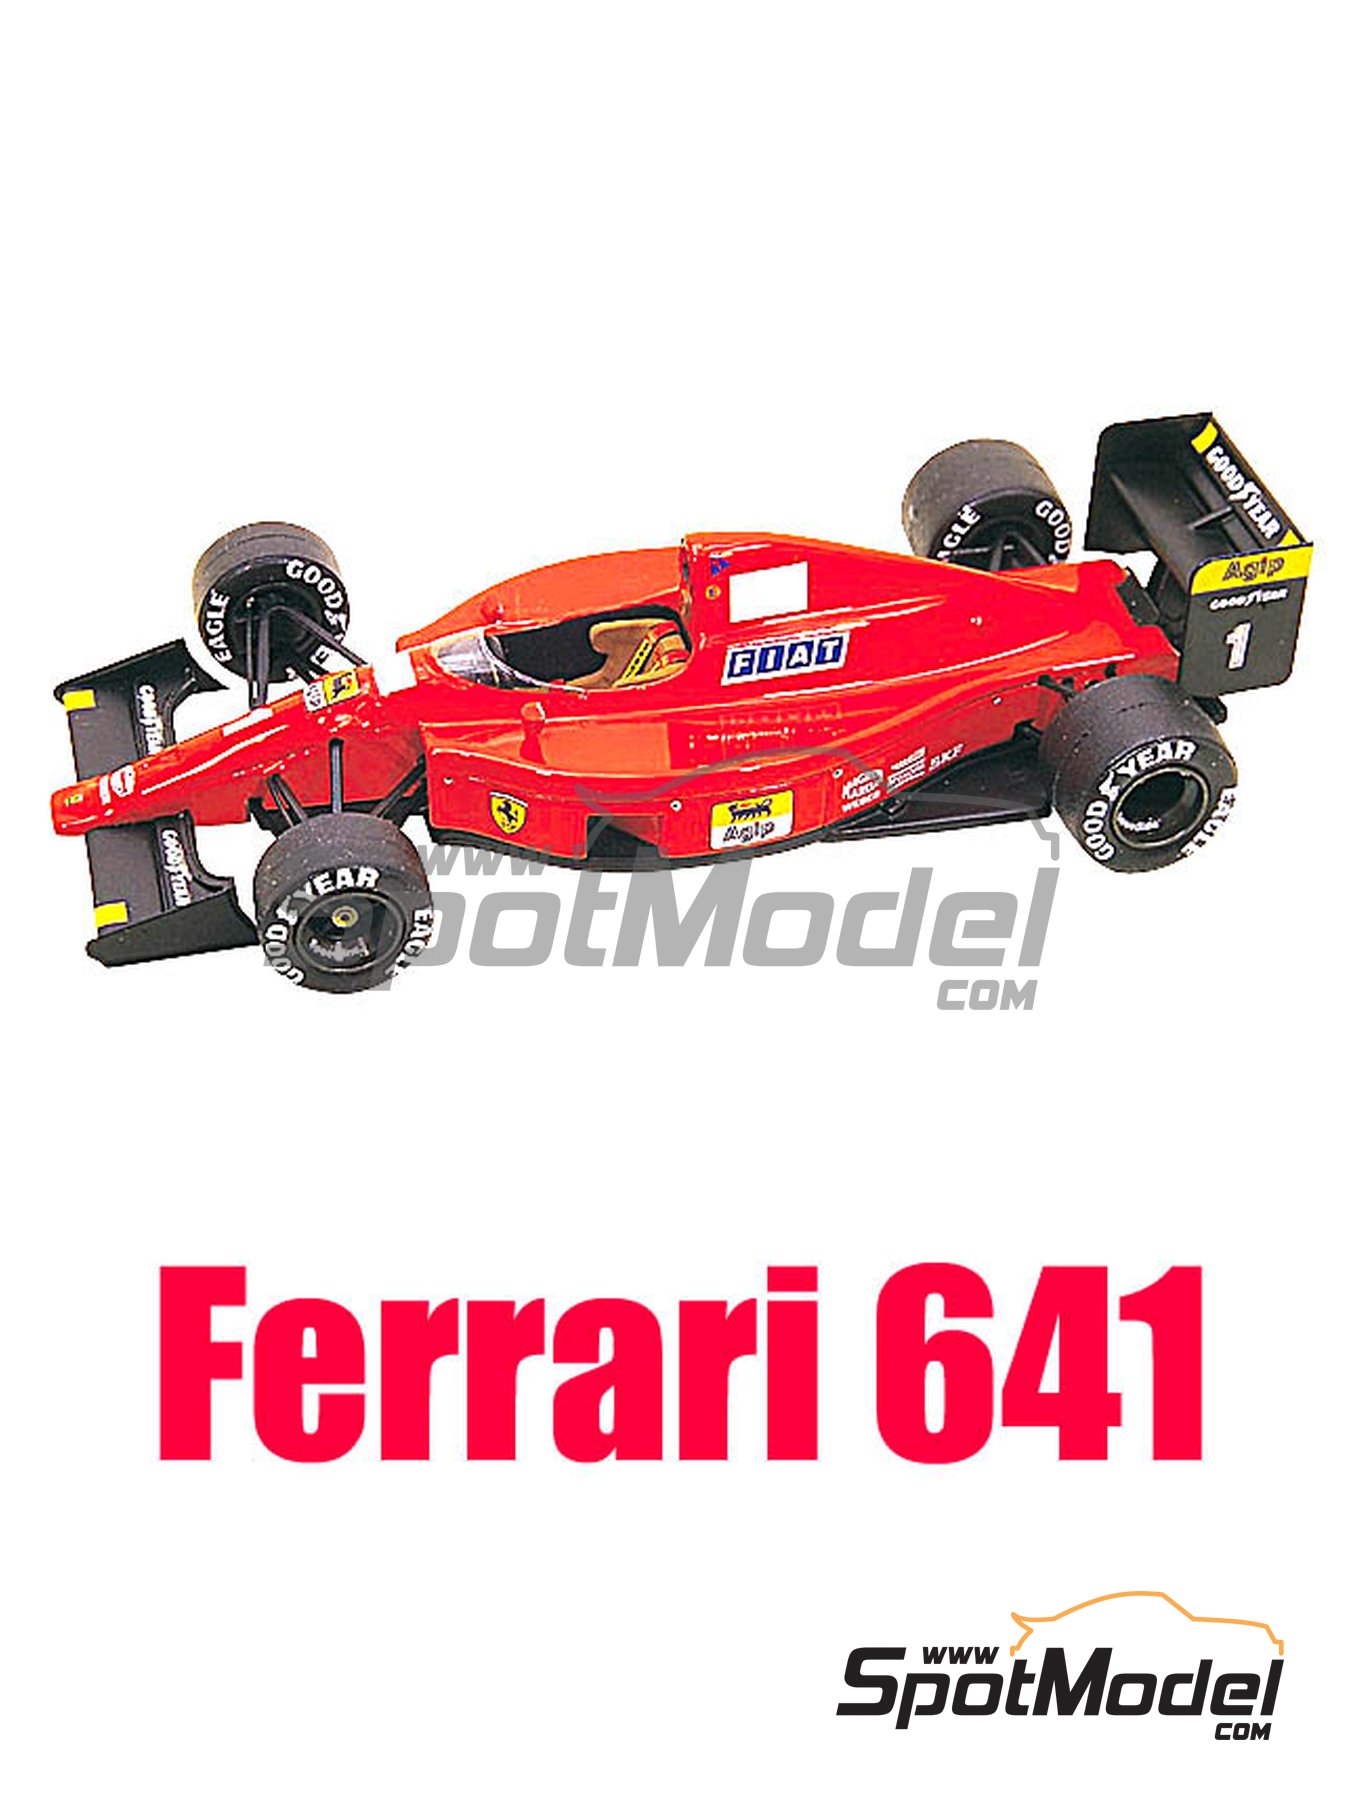 Ferrari 641 Scuderia Ferrari Team sponsored by Agip - USA - United States  of America Formula 1 Grand Prix 1990. Car scale model kit in 1/43 scale manu